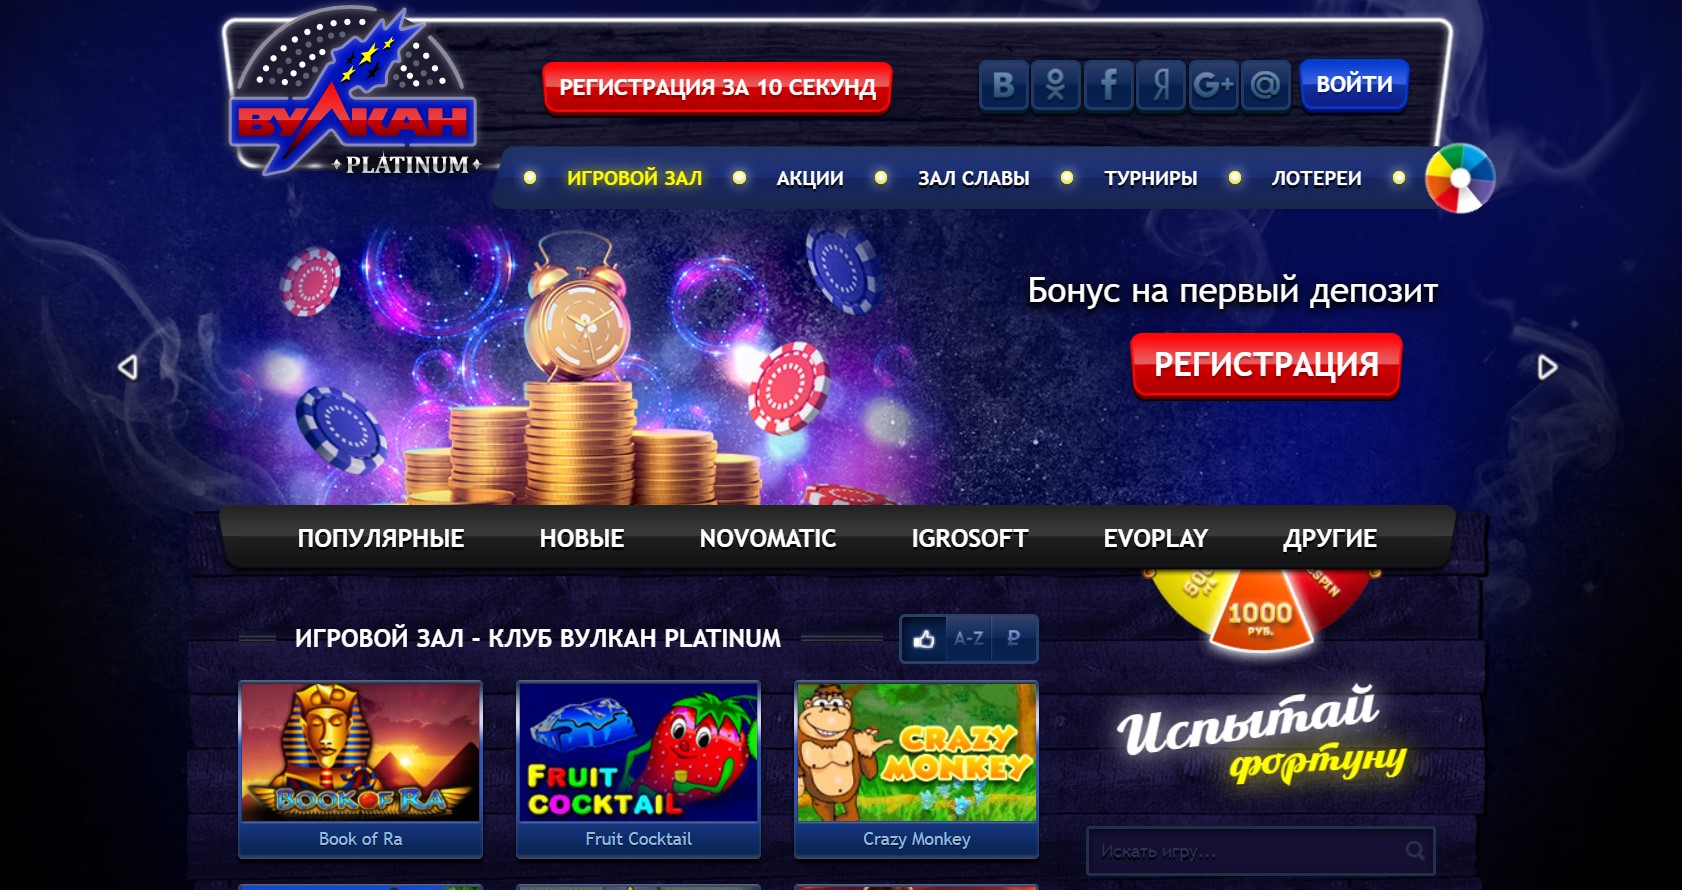 Примеру можно посетить виртуальное казино вулкан можно мостбет зеркало сегодня www moctbet ru